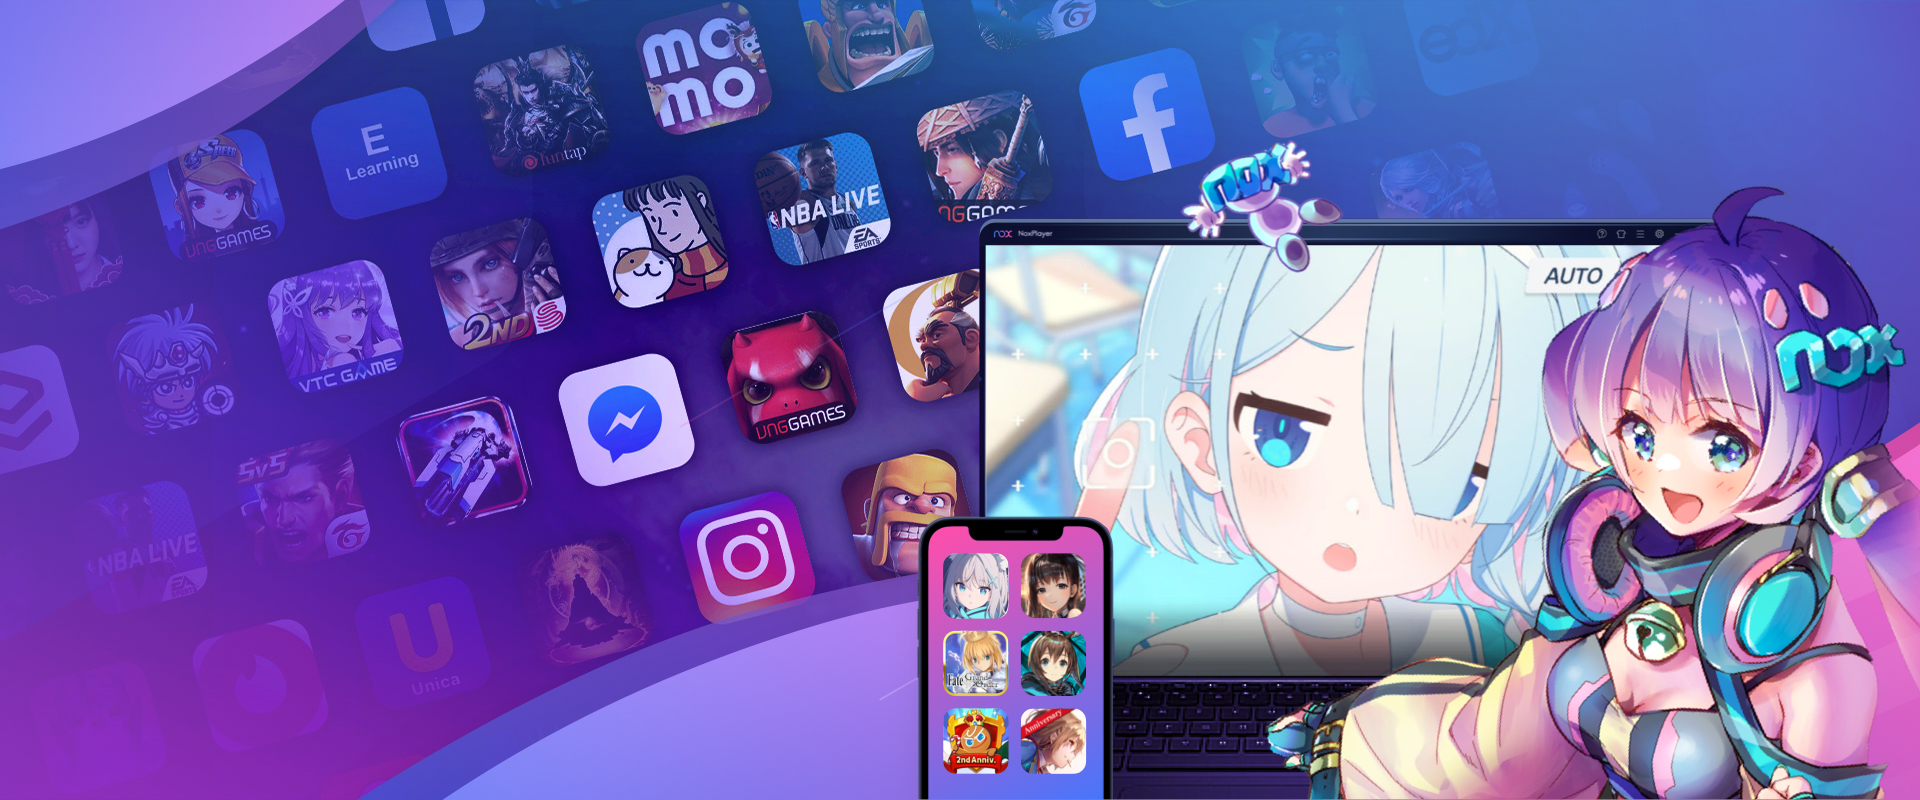 생존소녀 : 건슬링어 수집형 RPG PC 버전, 컴퓨터에서 설치하고 안전하게 즐기자 - 녹스 앱플레이어